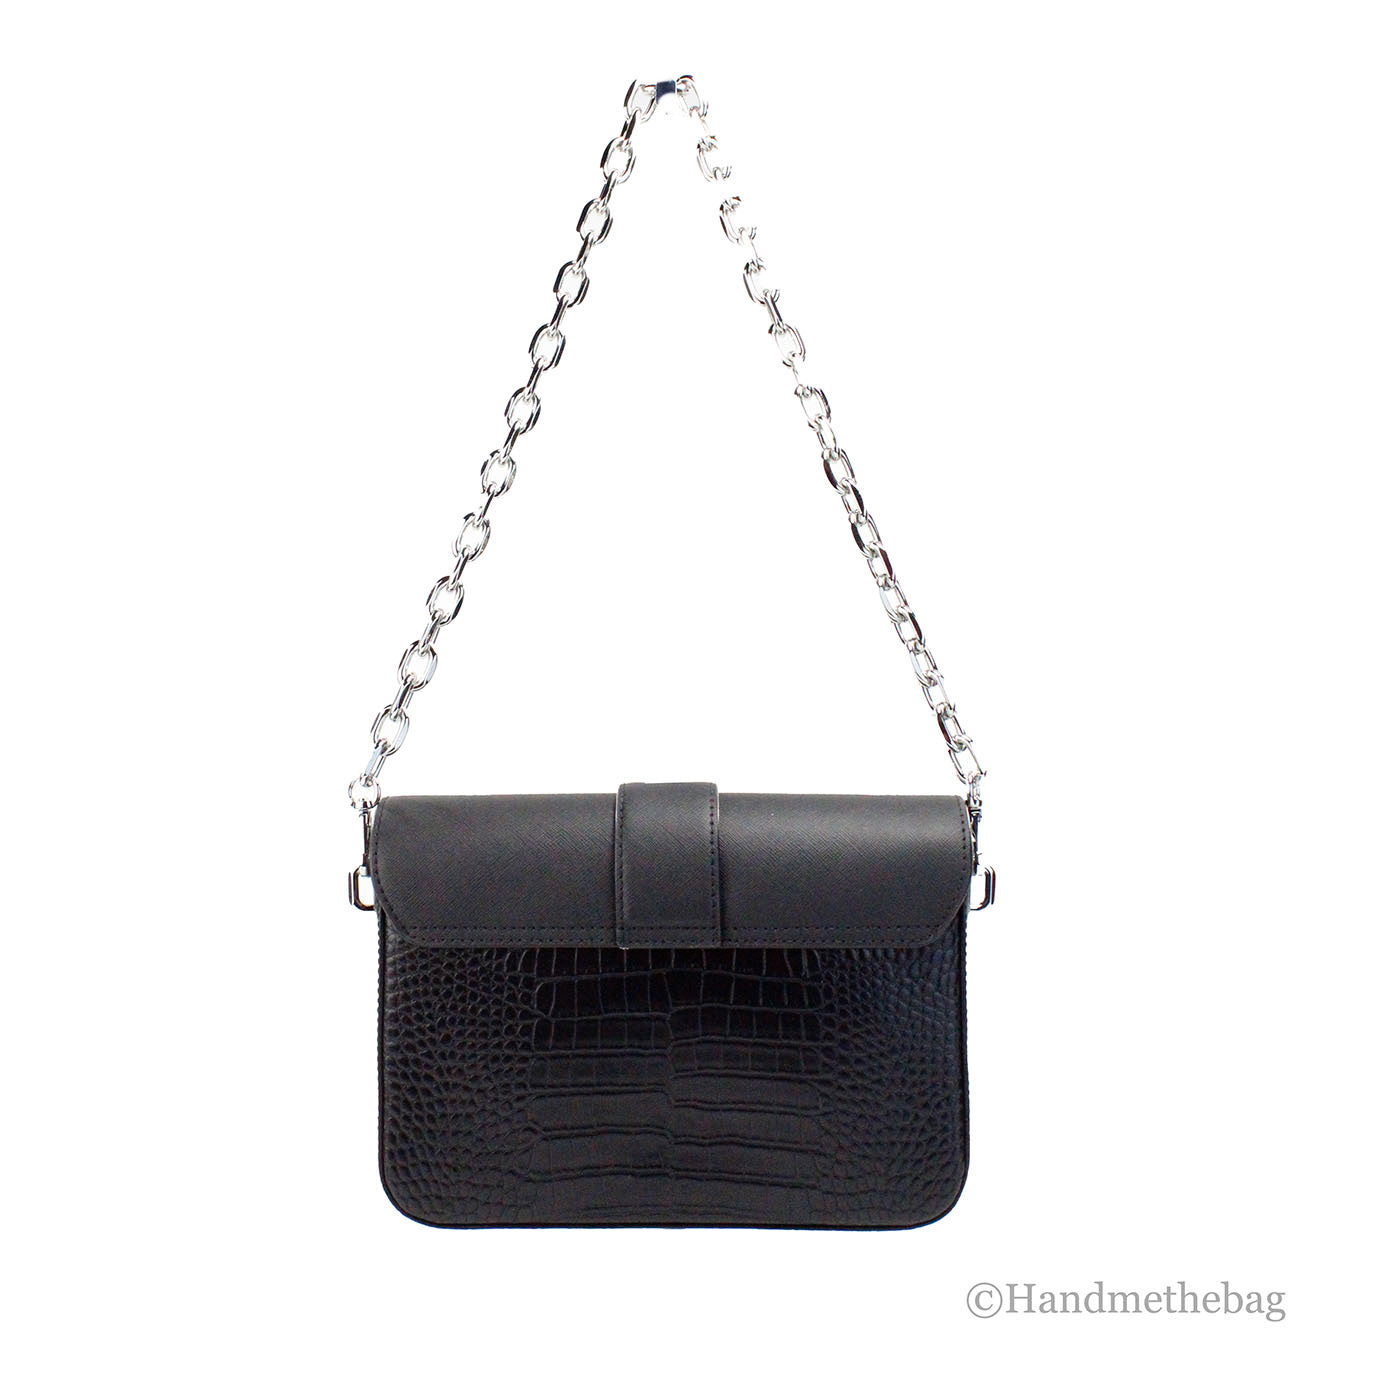 Michael Kors Carmen Medium Black Animal Print Convertible Shoulder Bag